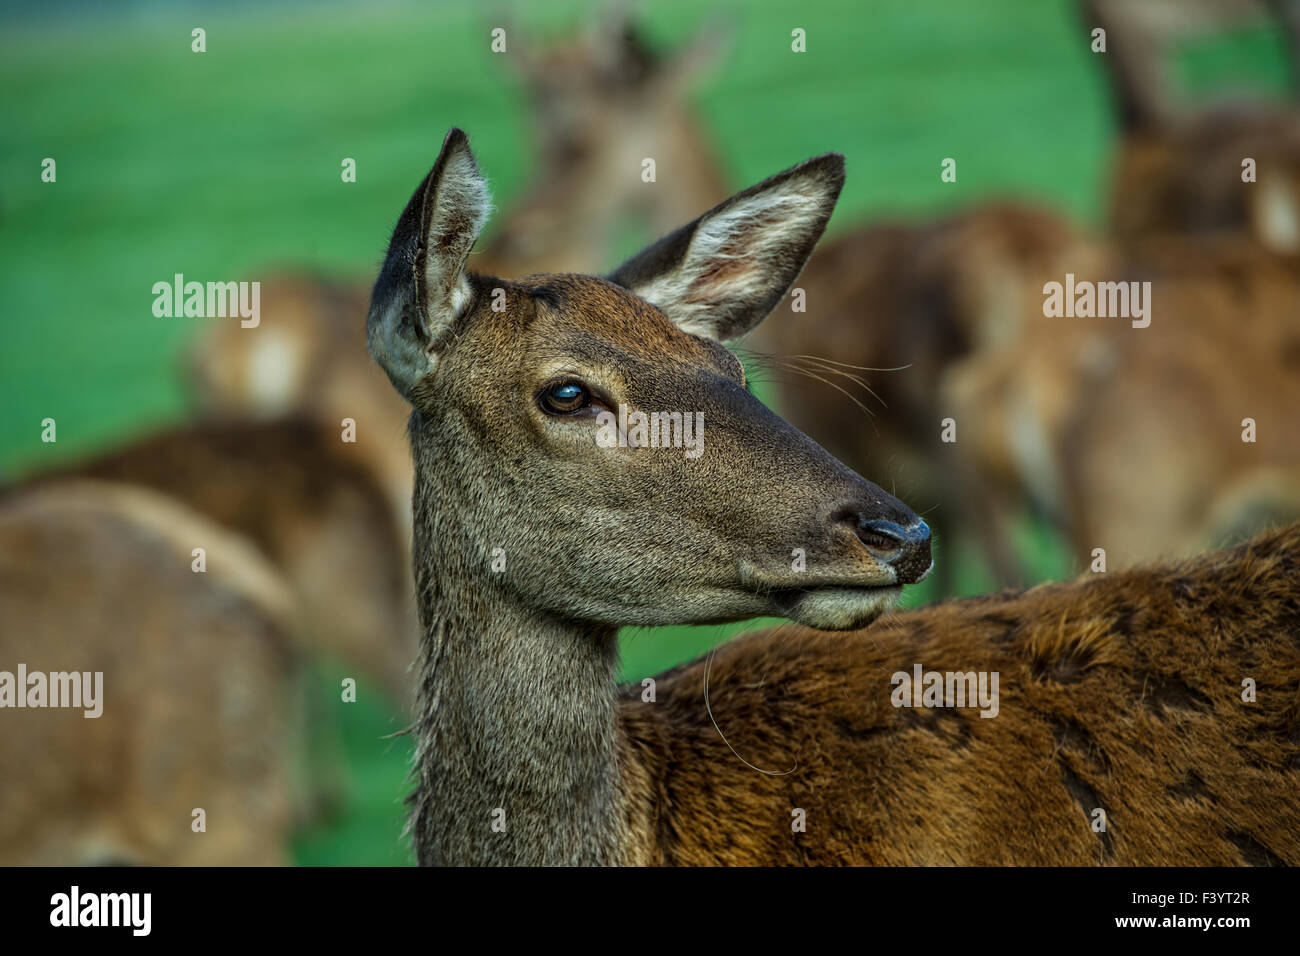 fallow deer Stock Photo